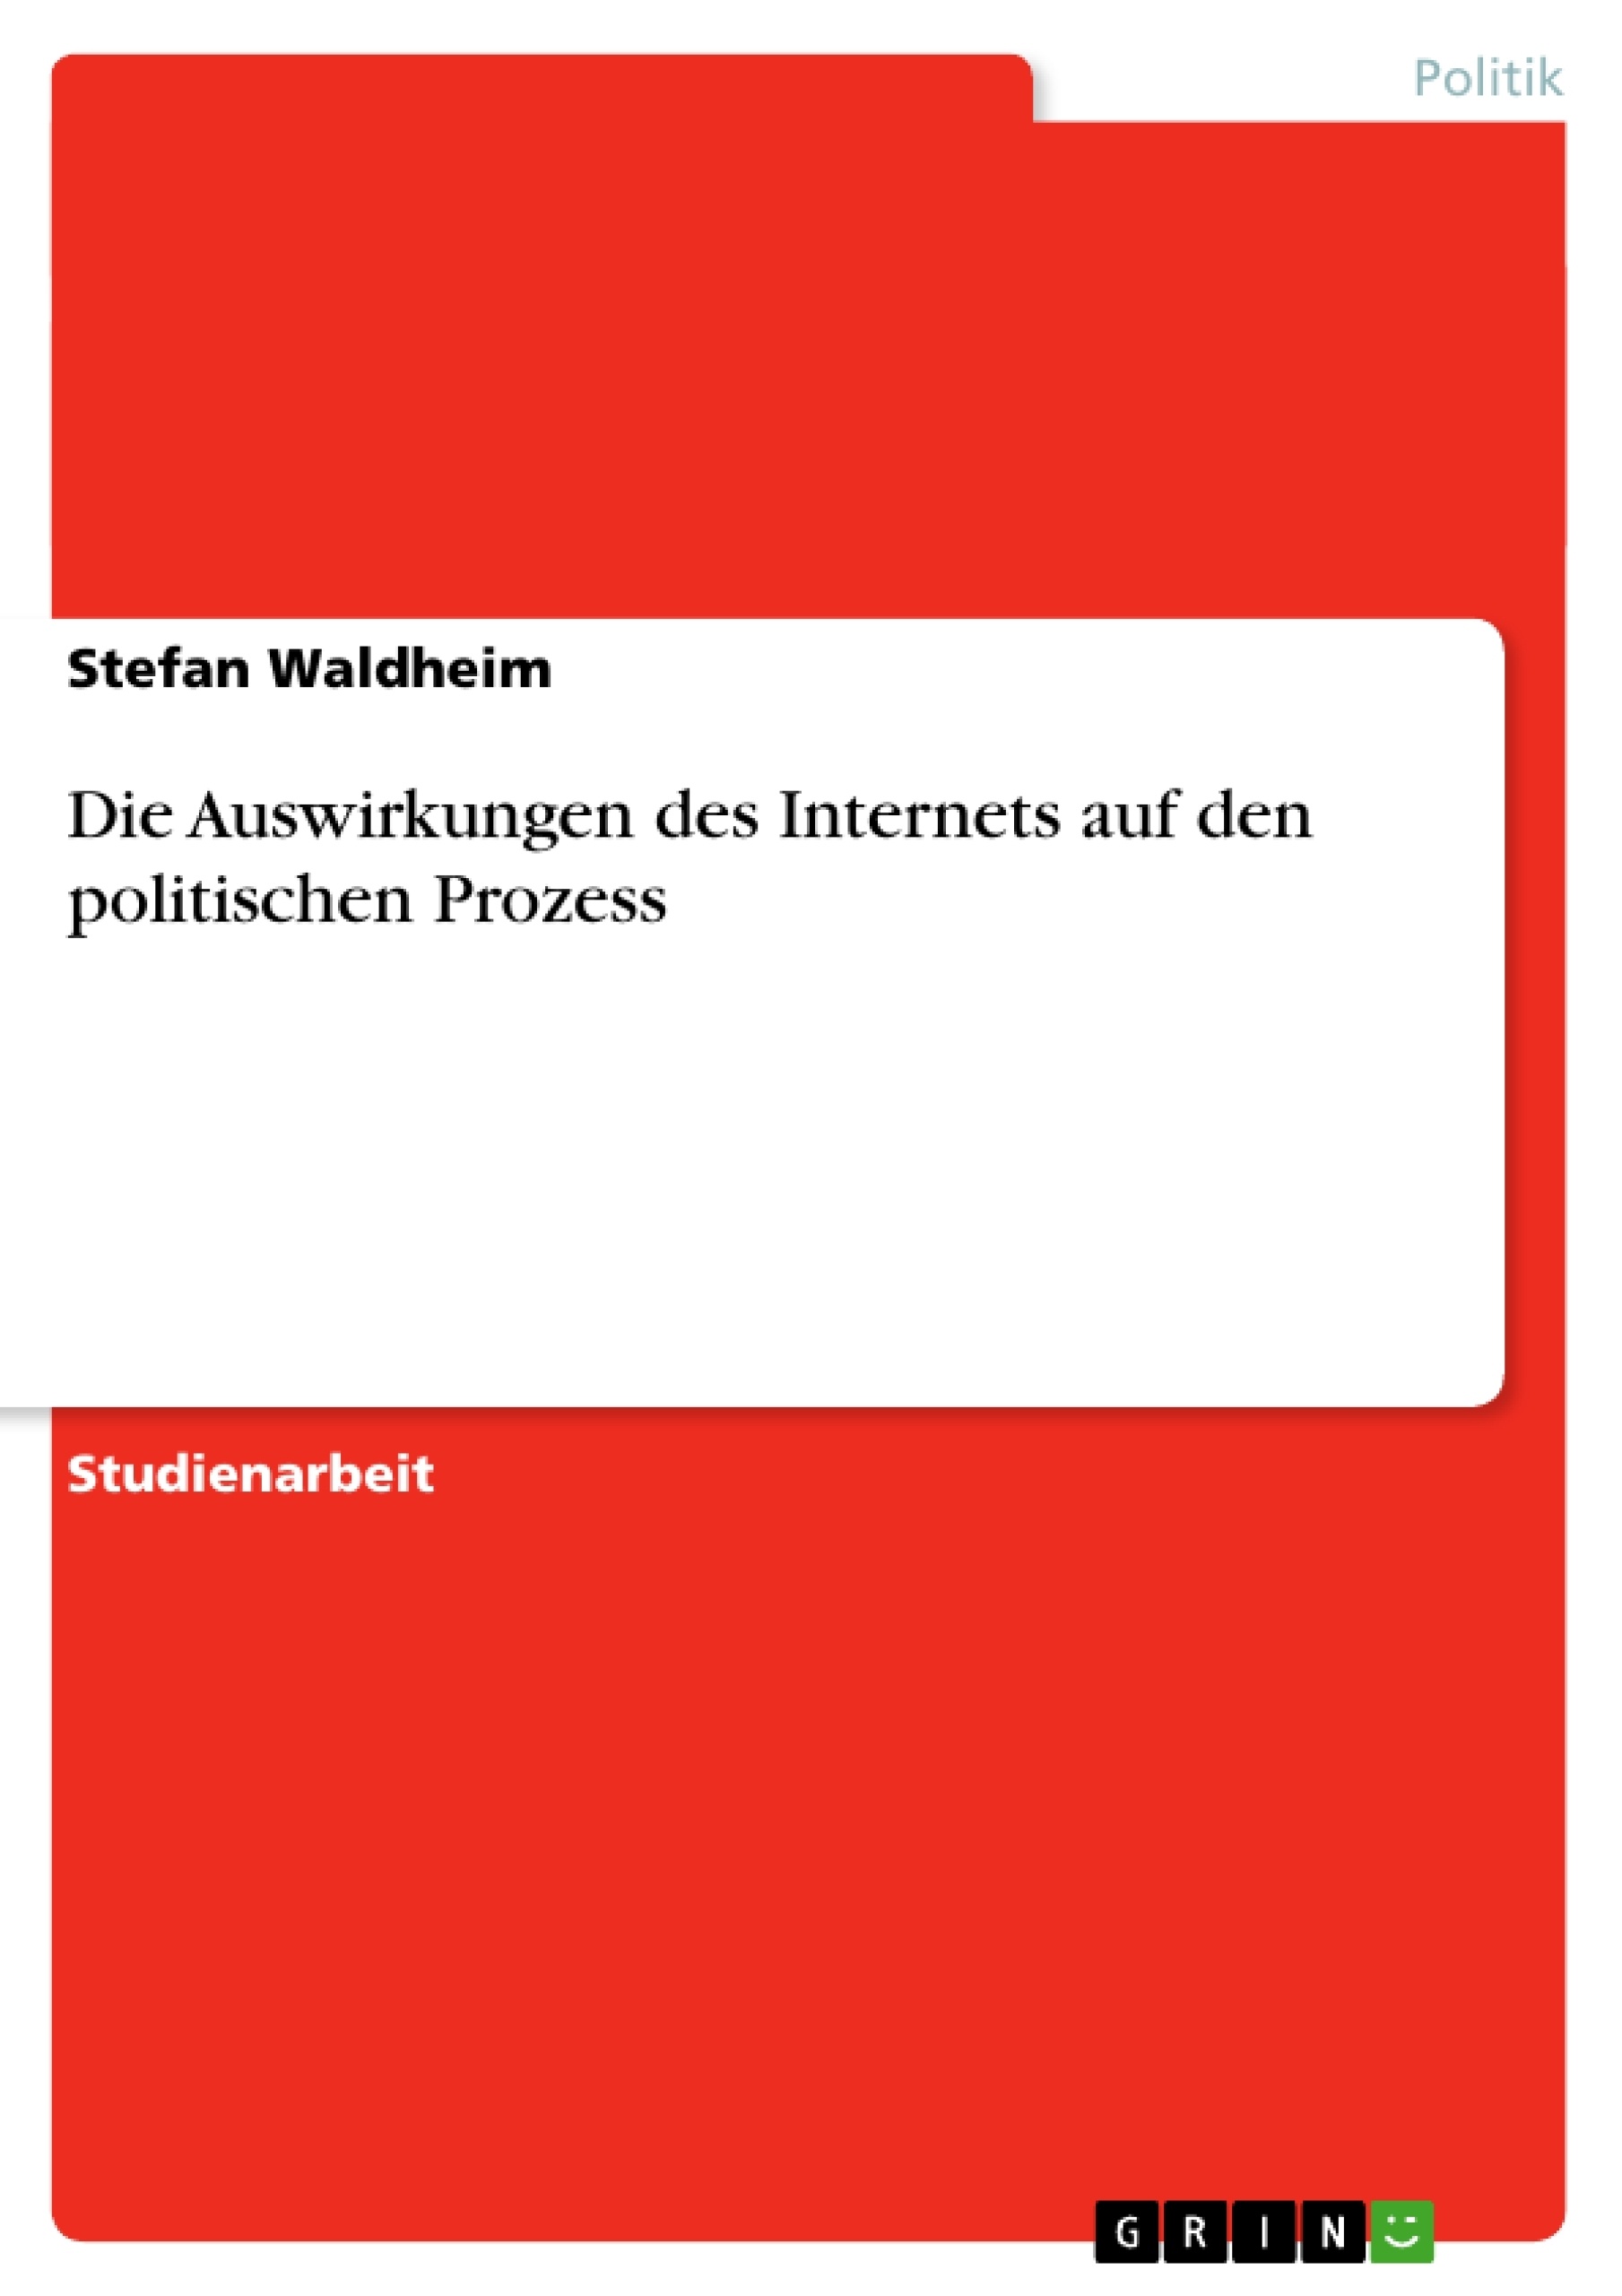 Título: Die Auswirkungen des Internets auf den politischen Prozess